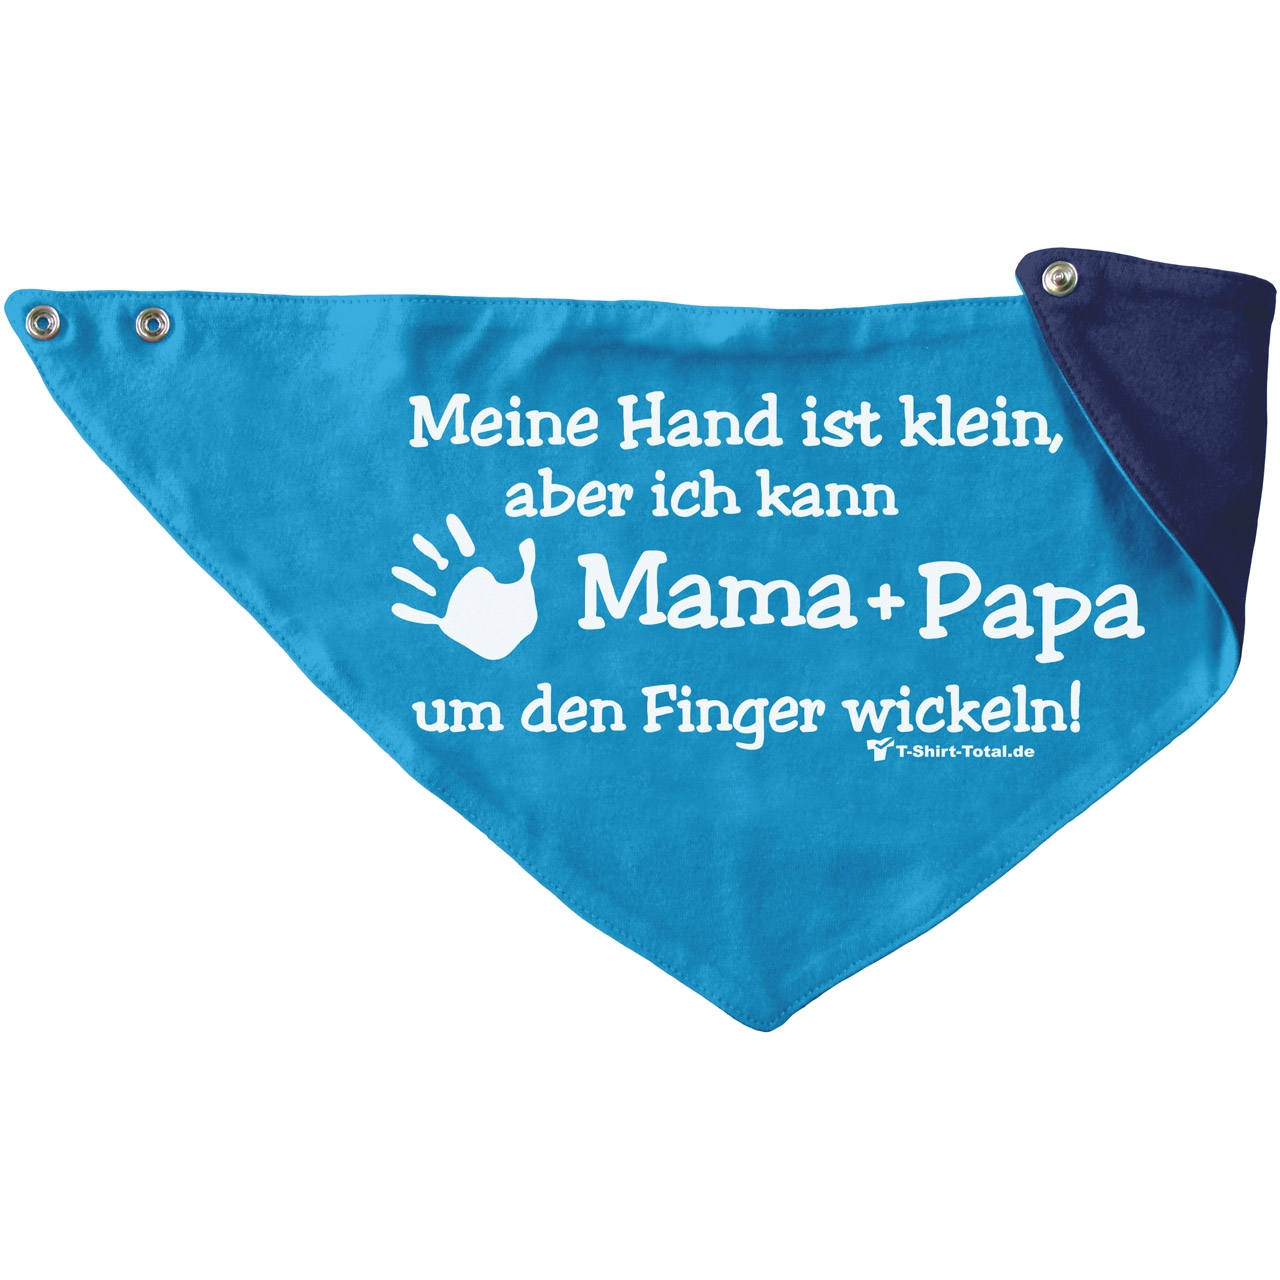 Kleine Hand Mama Papa Kinder Dreieckstuch türkis/navy